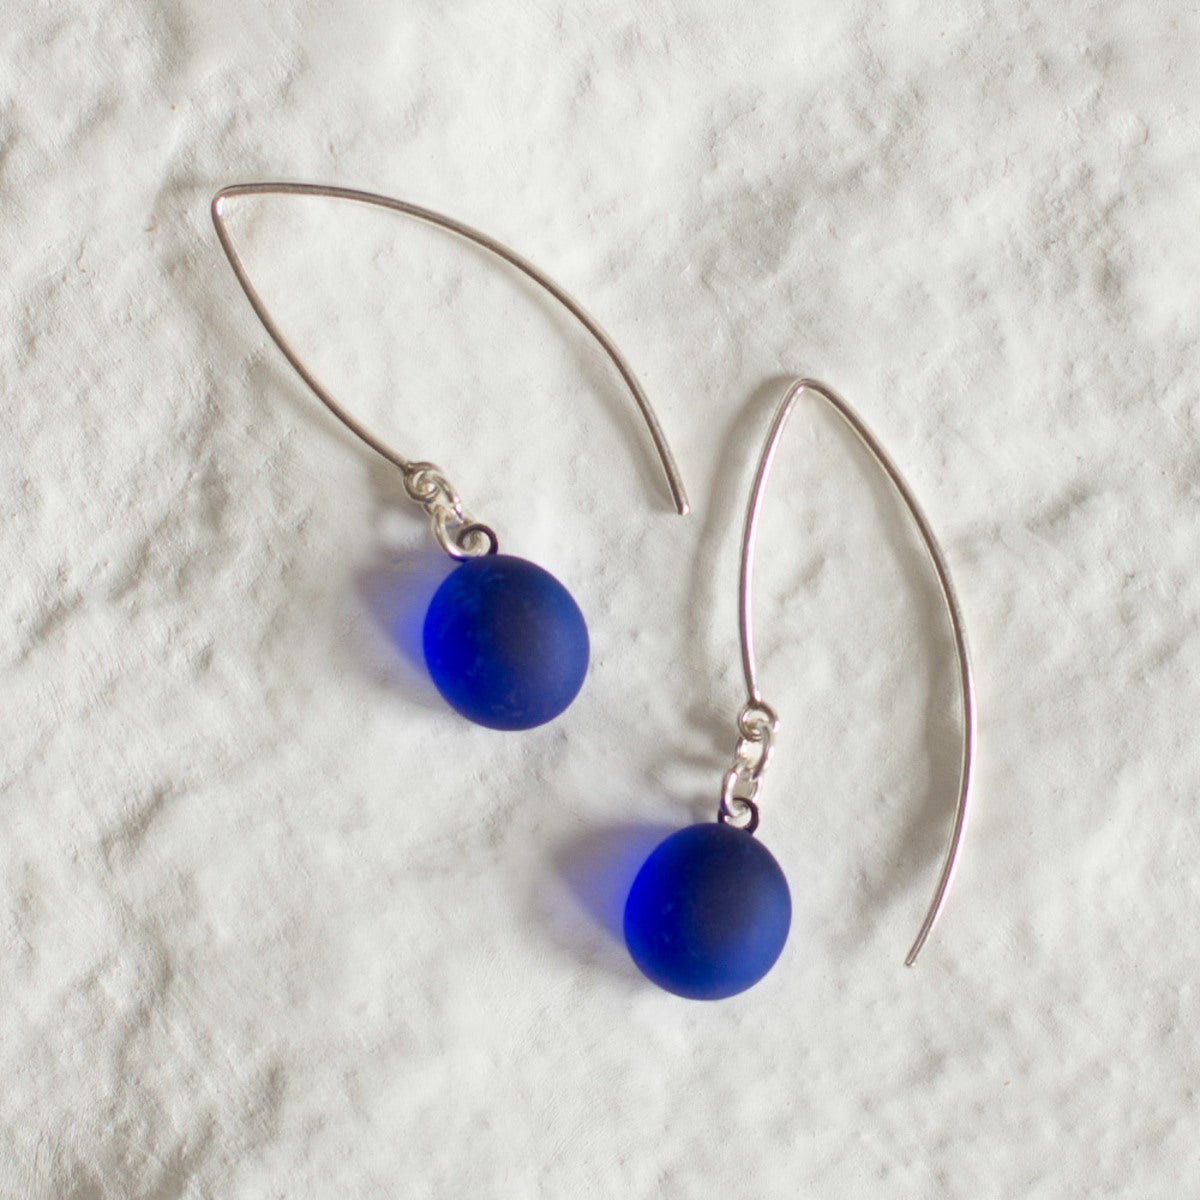 https://www.vivaterra.com/images/v1373-blu-blue-multi-seaglass-earrings.jpg_1200Wx1200H.jpg?format=1200Wx1200H